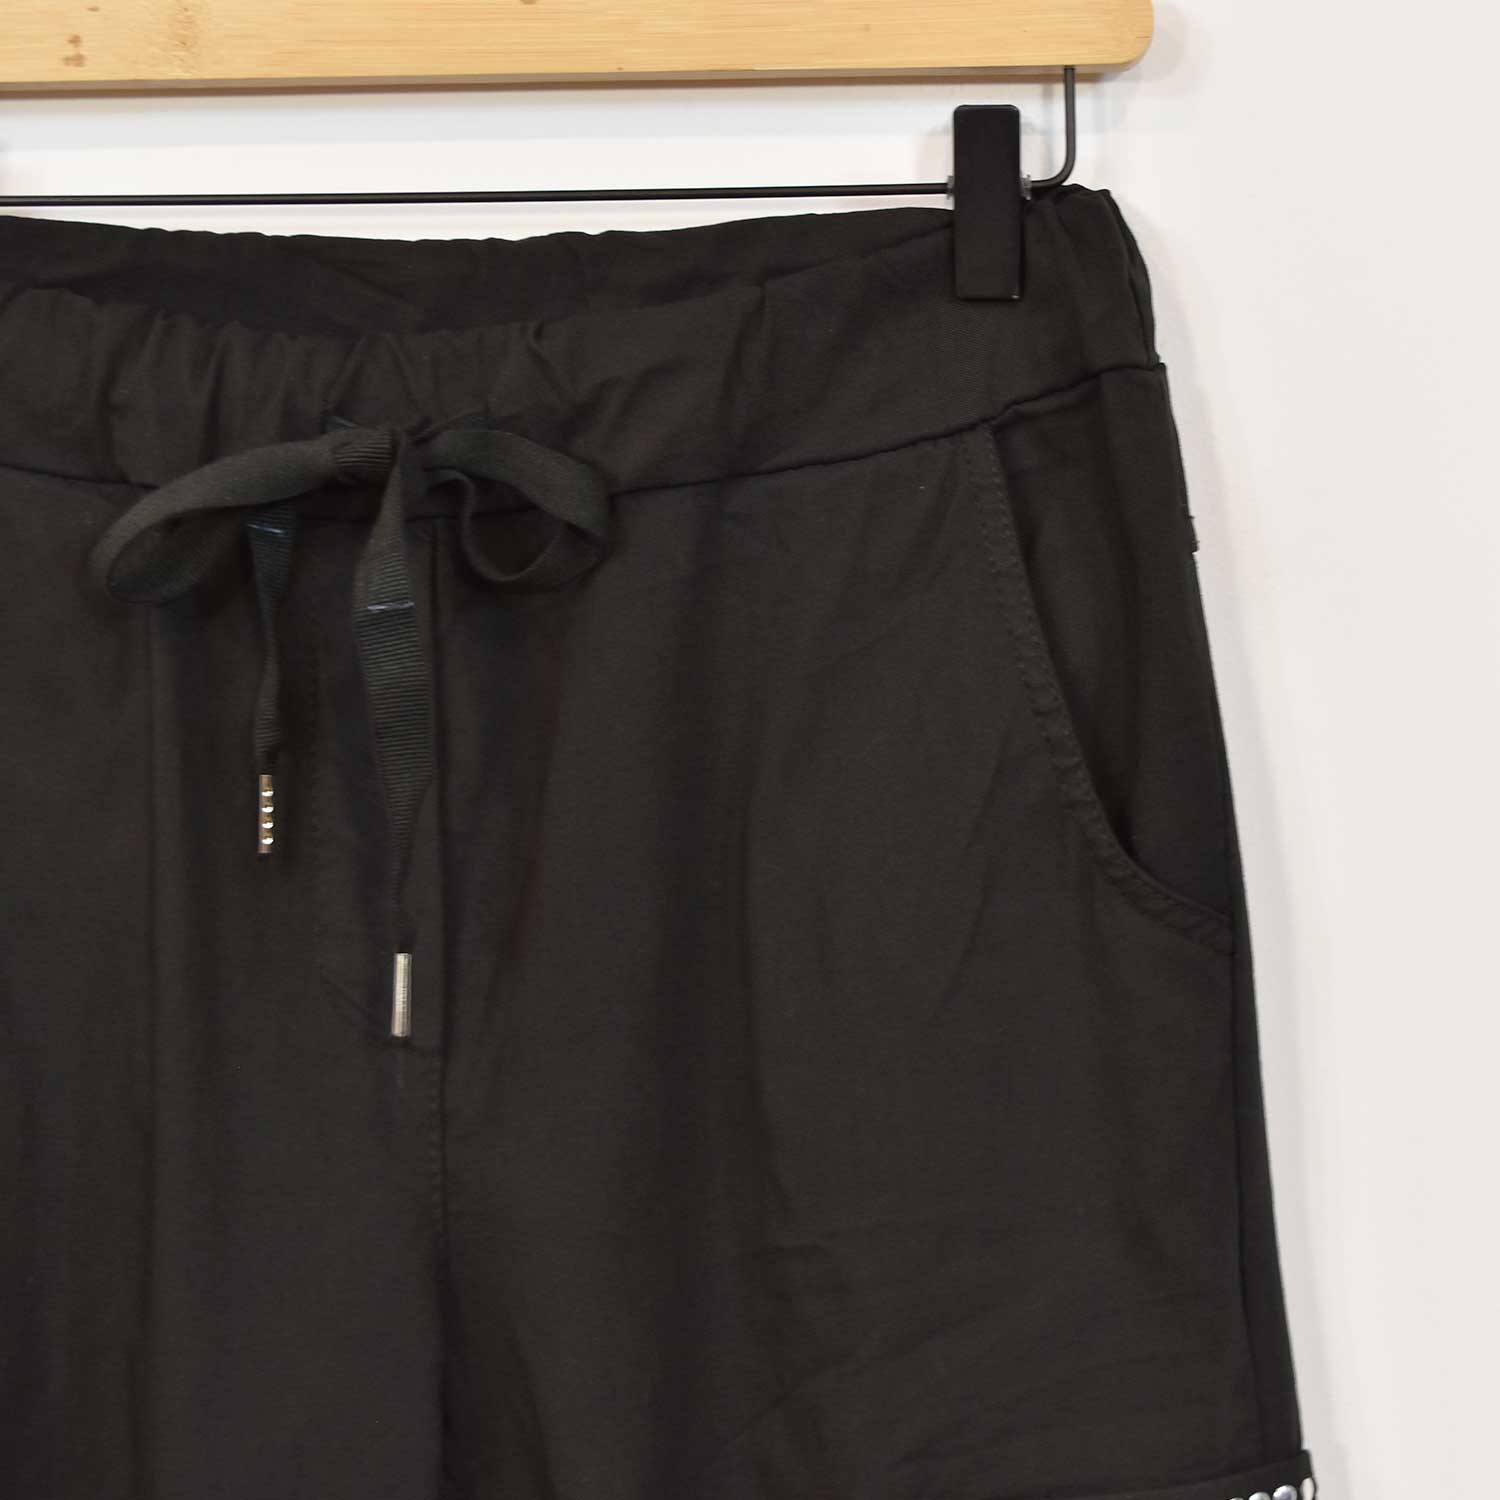 Pantalon cargo clous noir